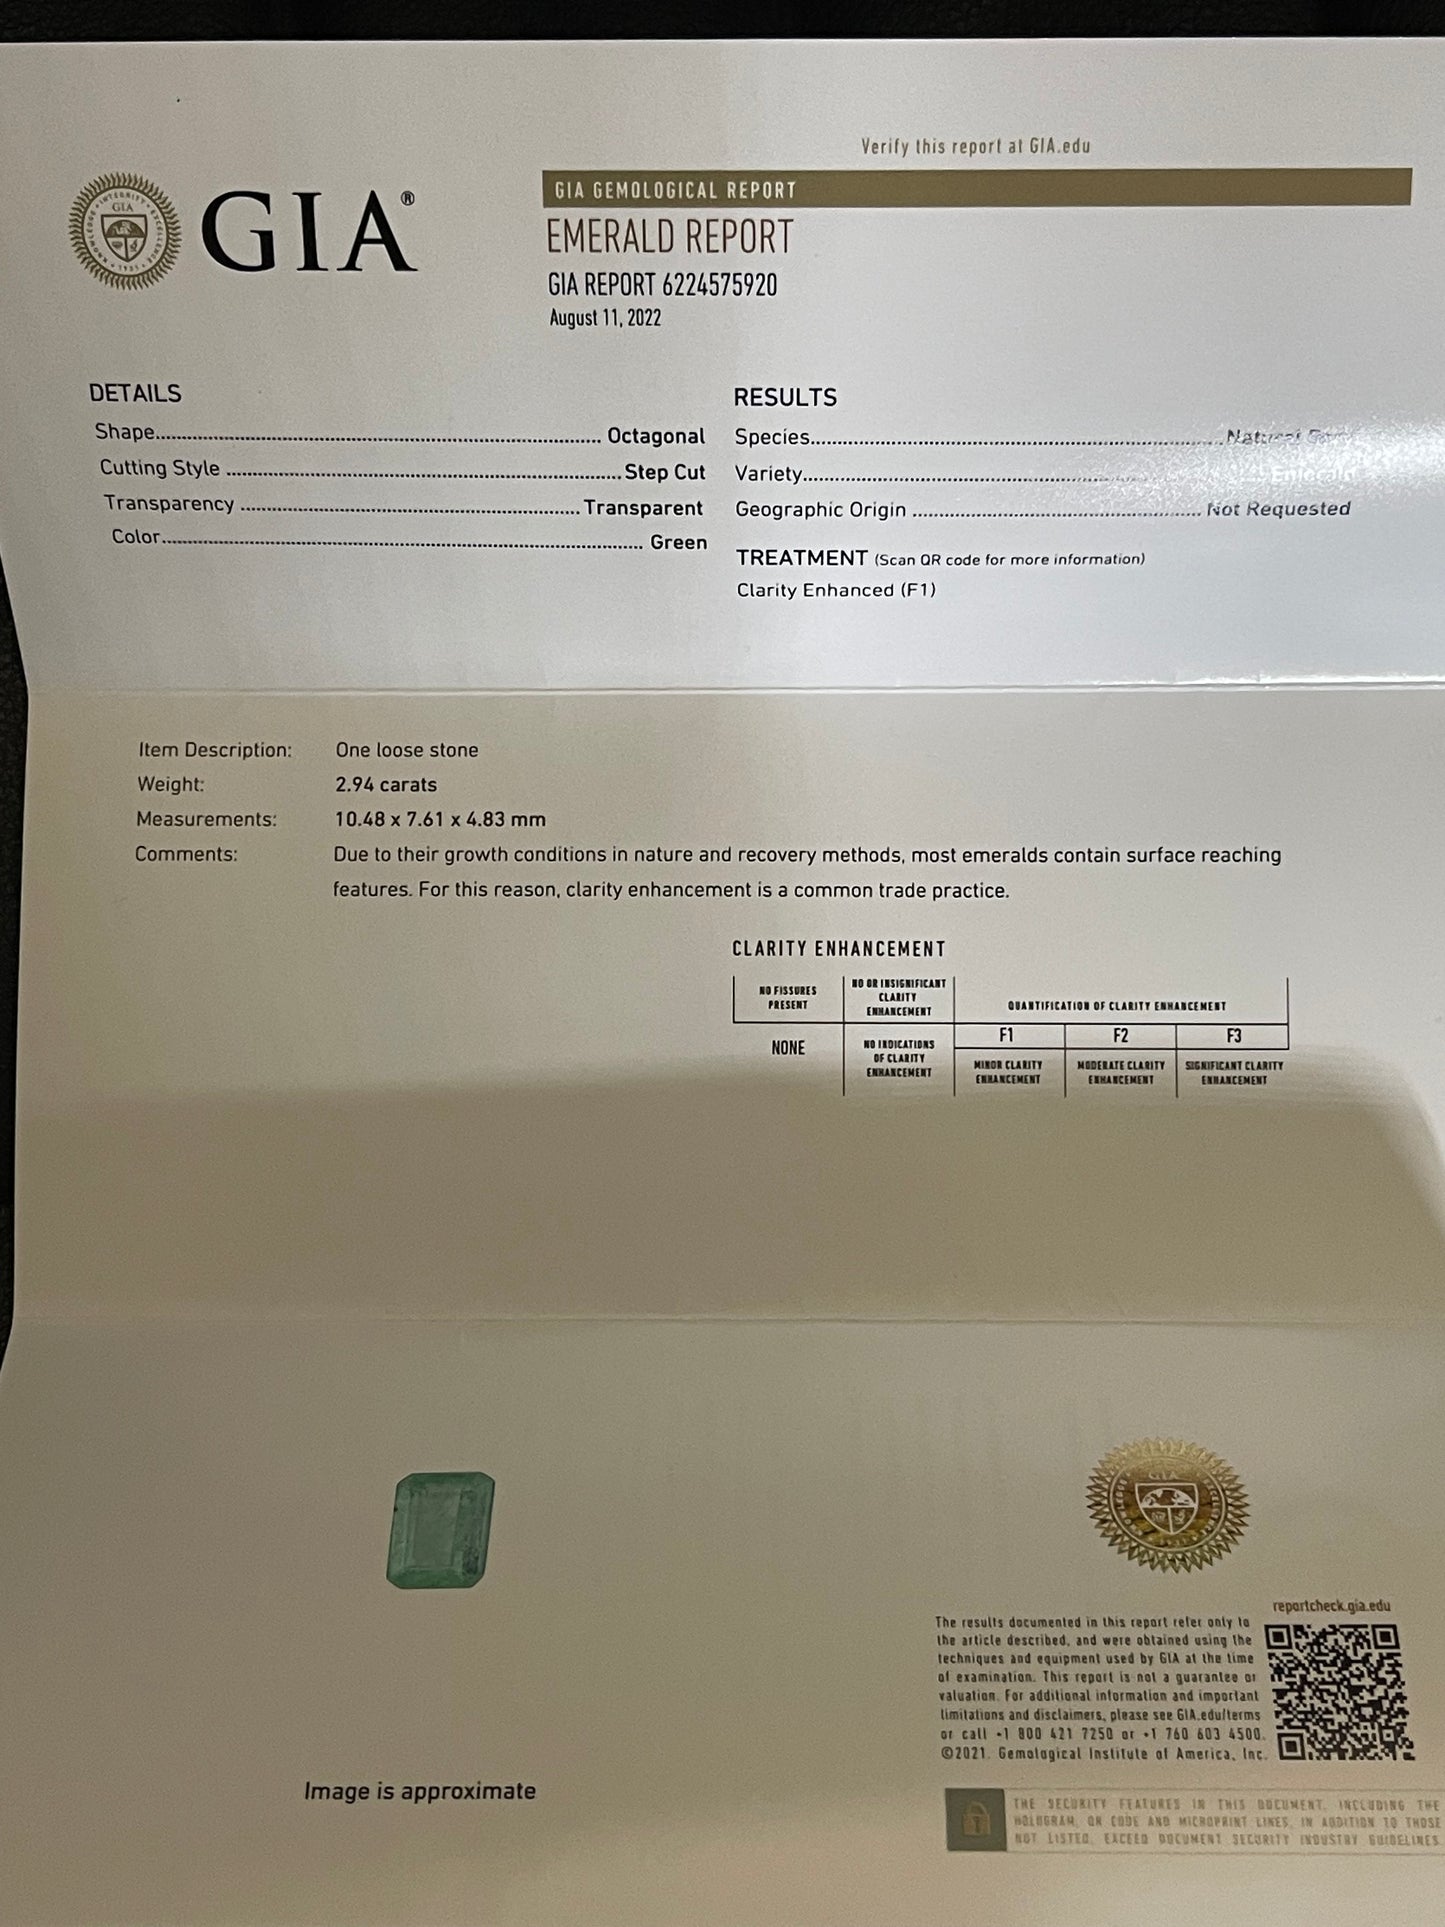 GIA Certified 2.94 Carat Natural Emerald Emerald Cut Loose Gemstone 10.48 x 7.61 x 4.83 MM